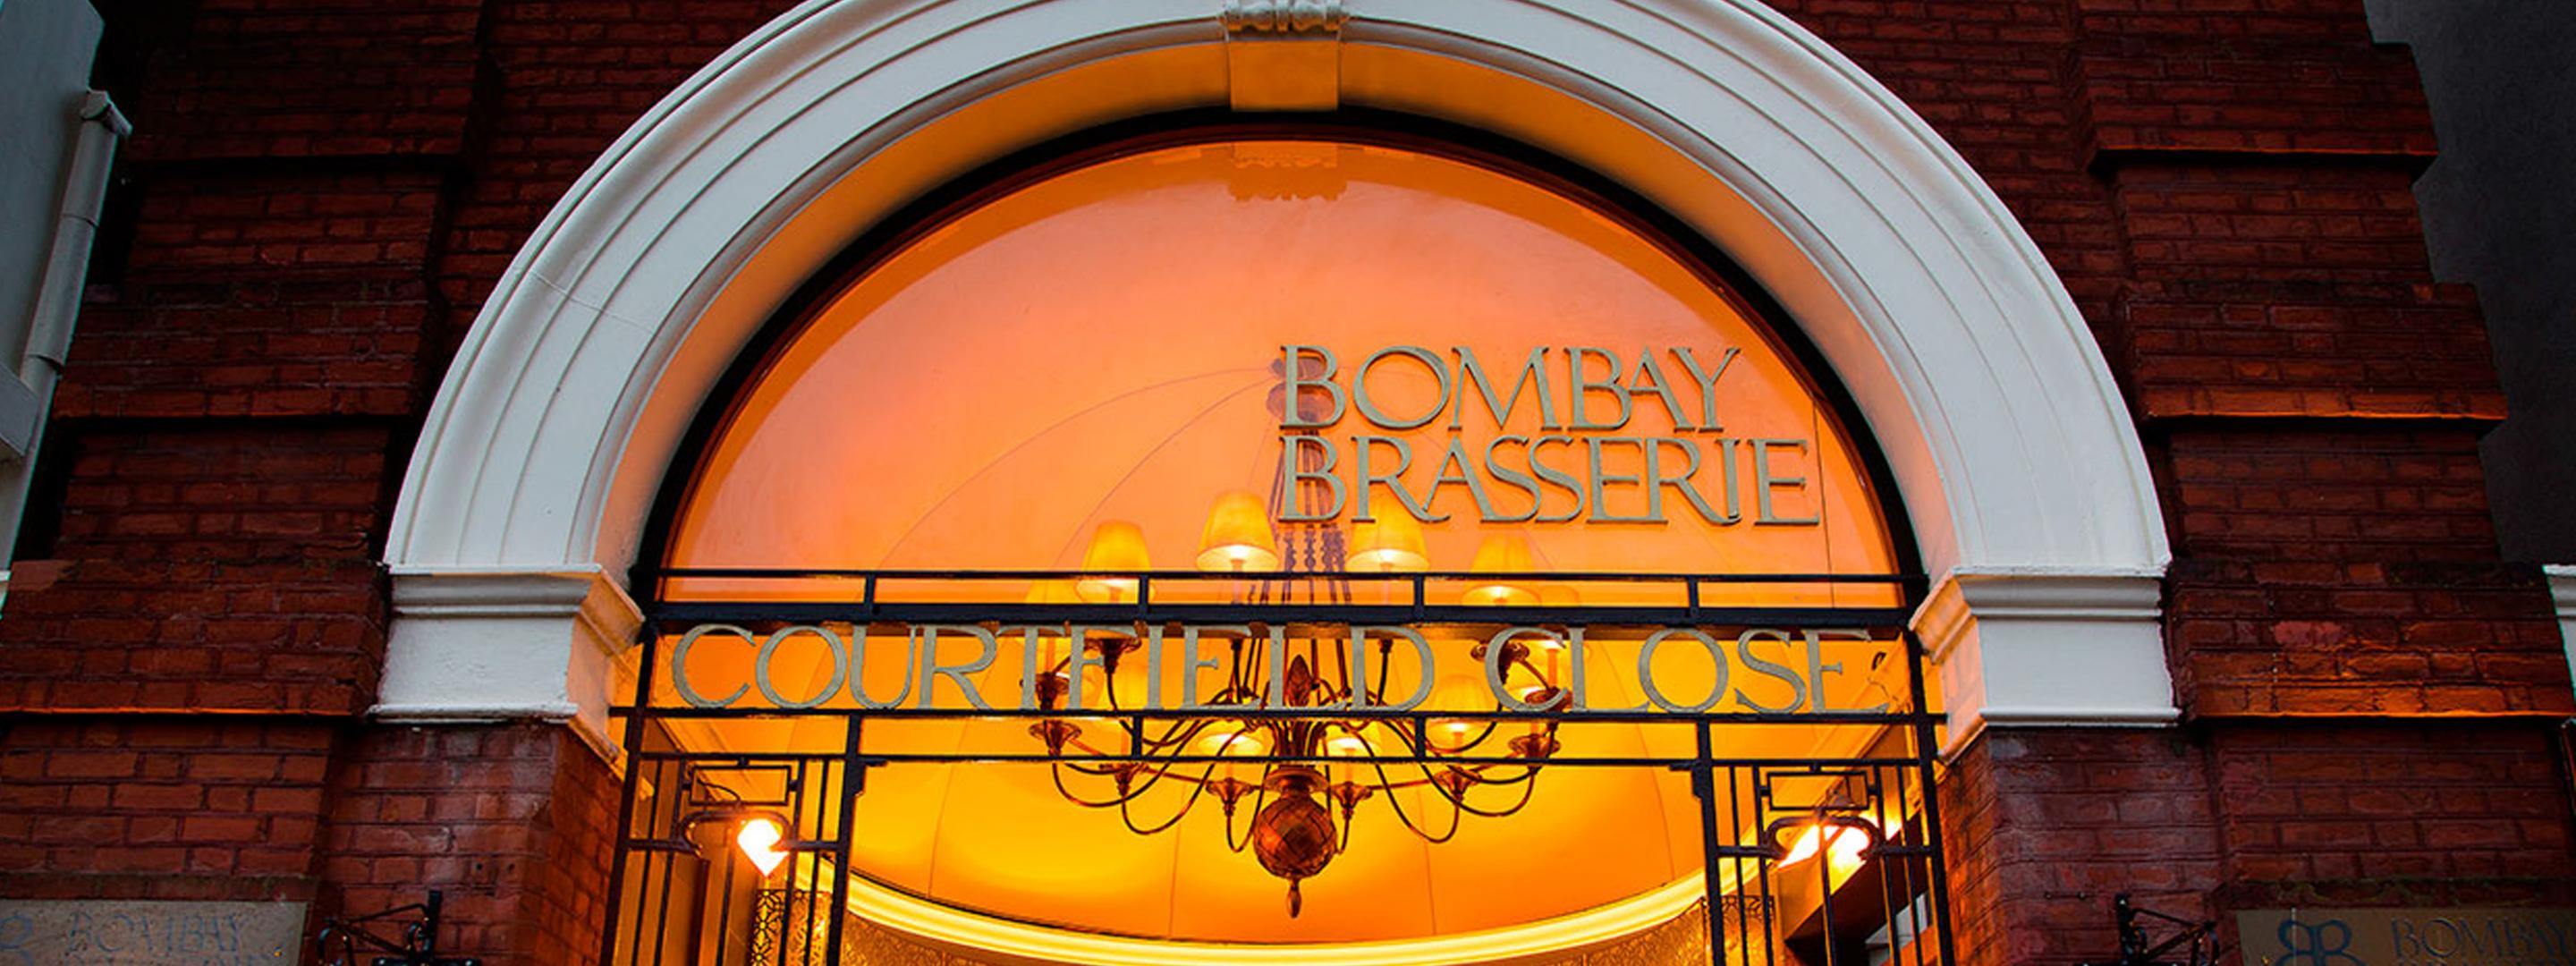 Bombay Brasserie